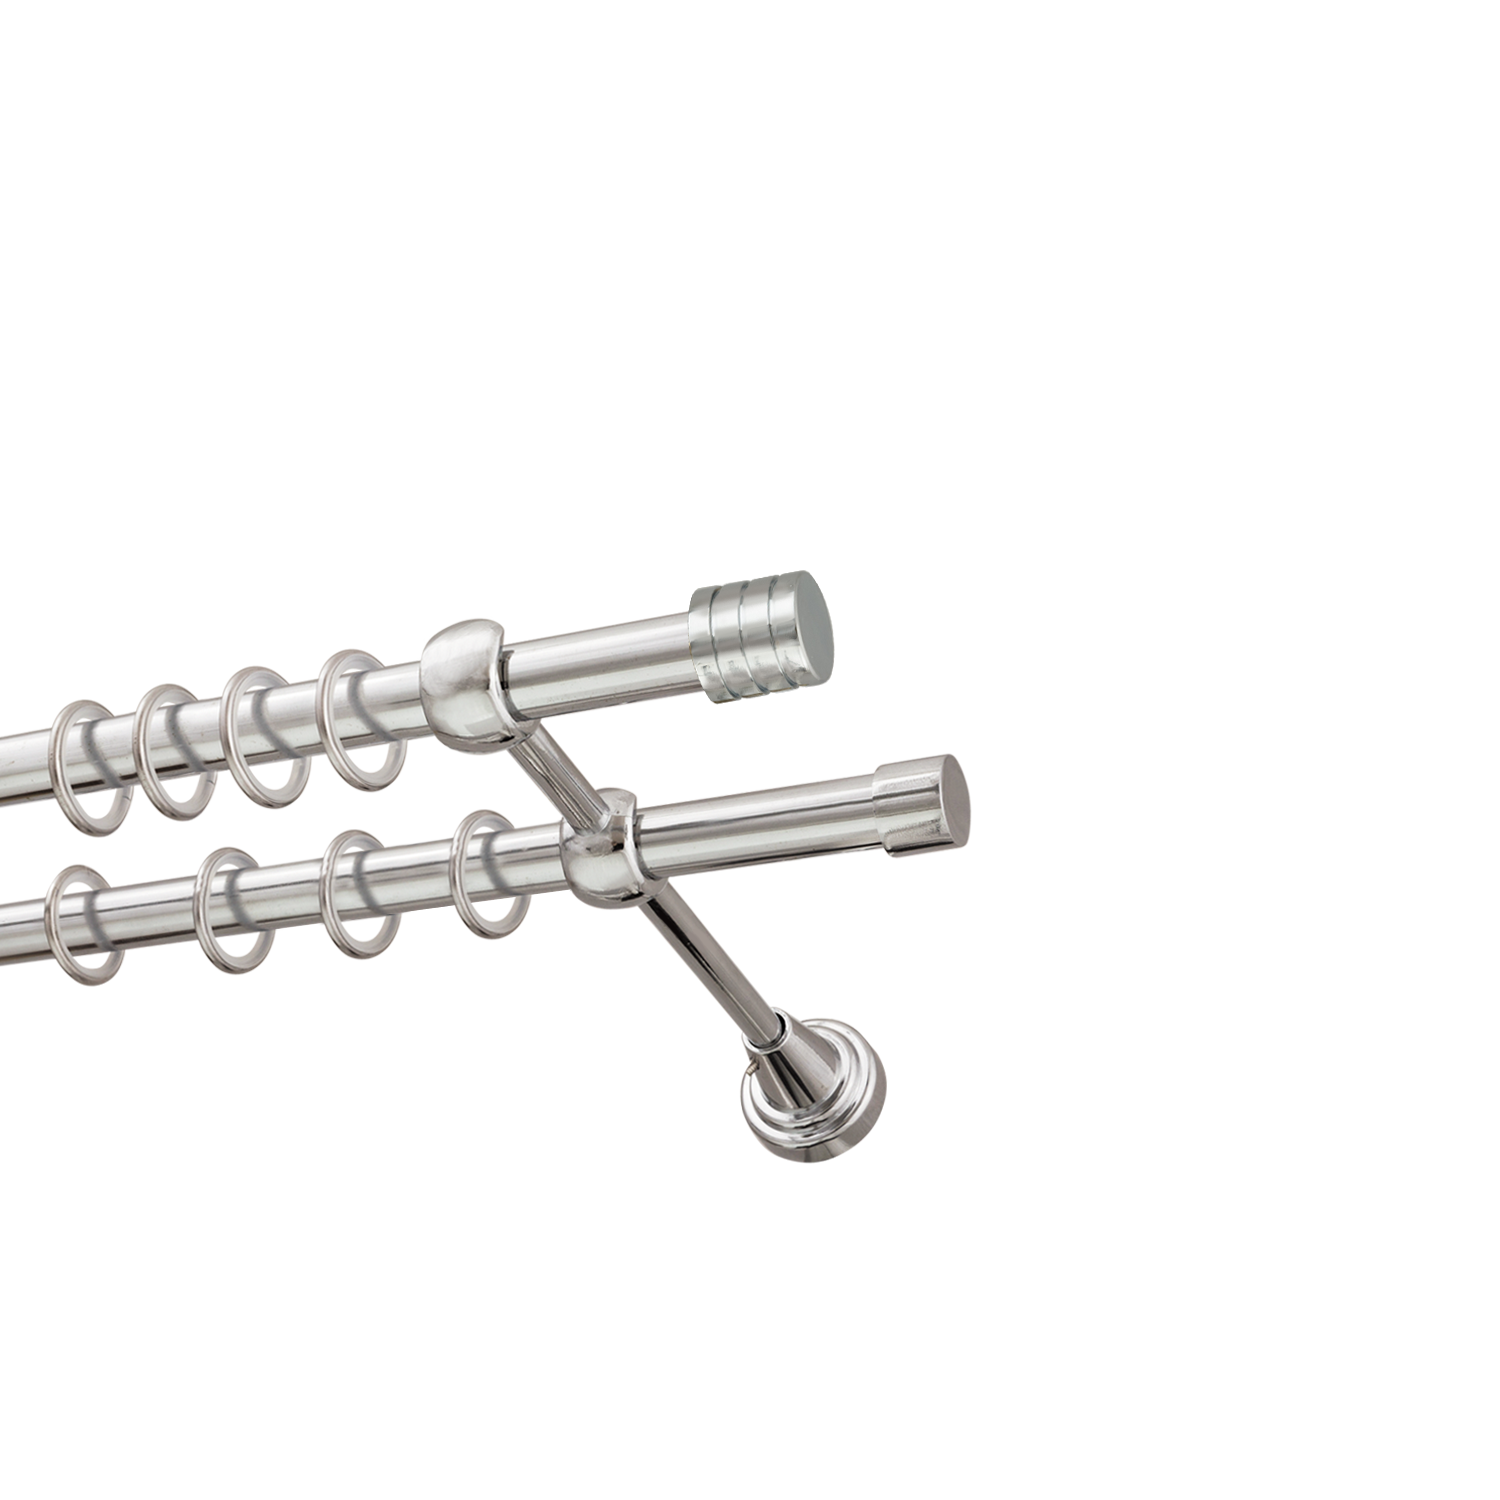 Металлический карниз для штор Подиум, двухрядный 16/16 мм, серебро, гладкая штанга, длина 160 см - фото Wikidecor.ru